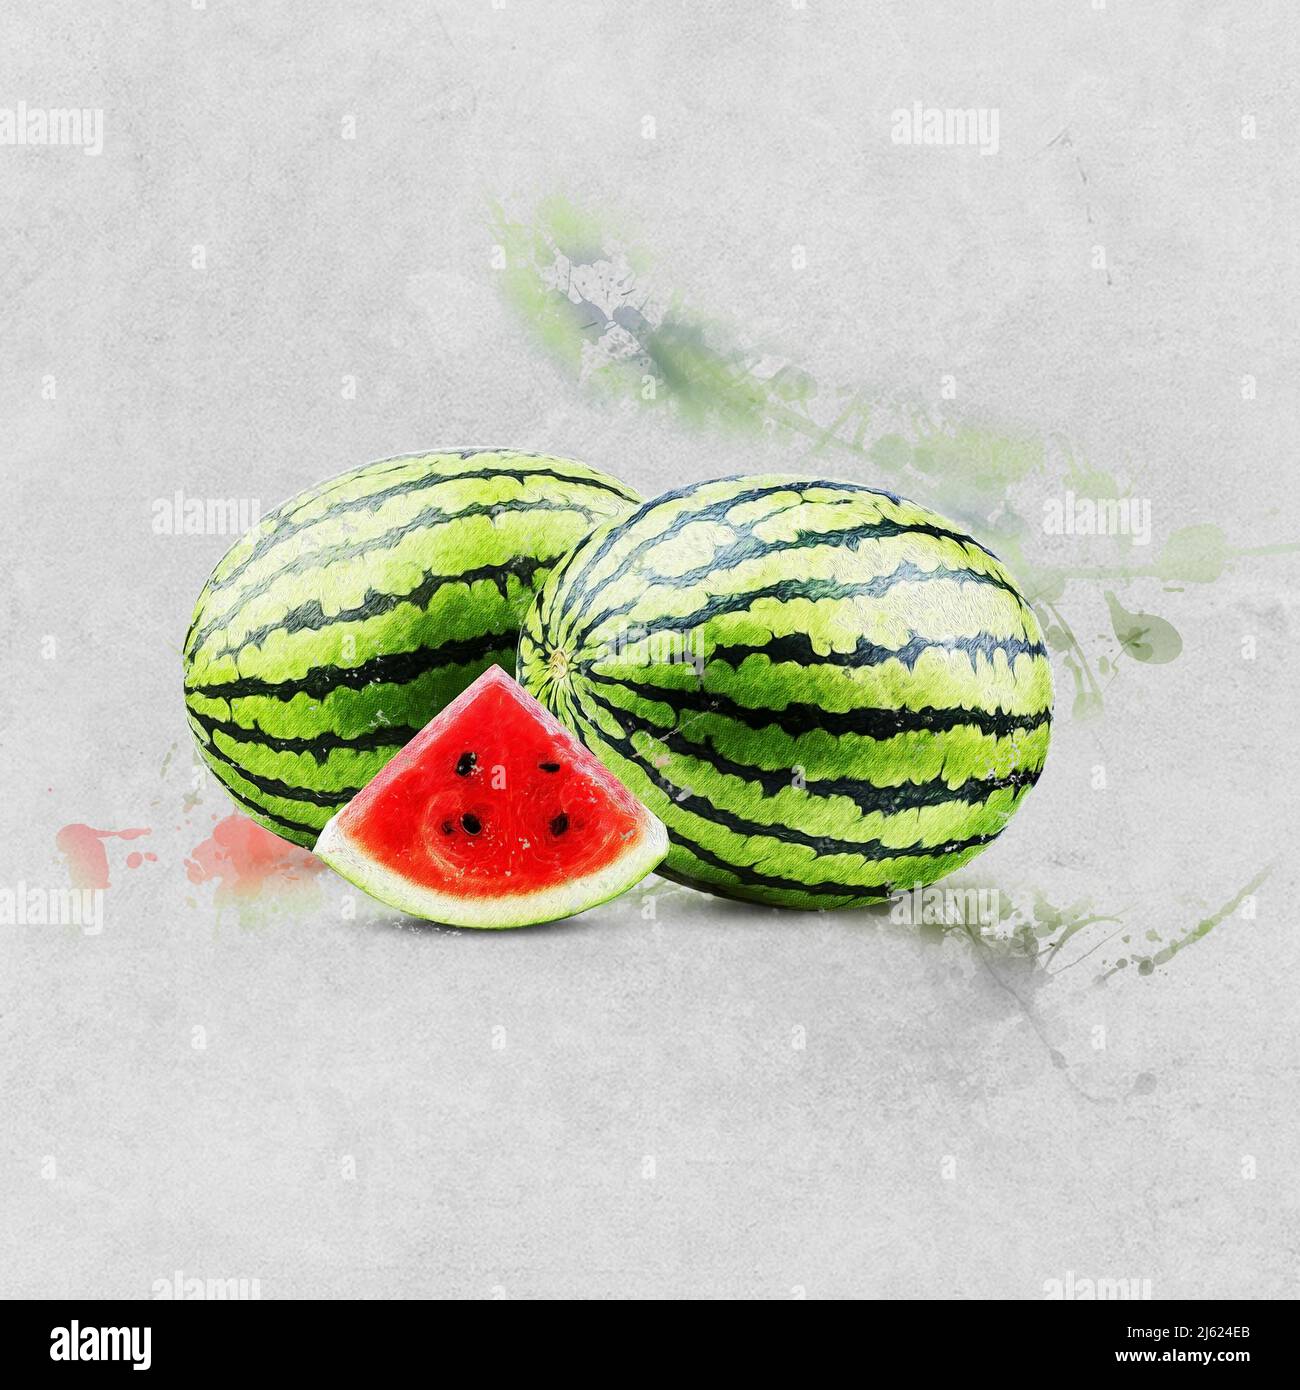 Aquarelle peinture fruits frais pastèque Banque D'Images